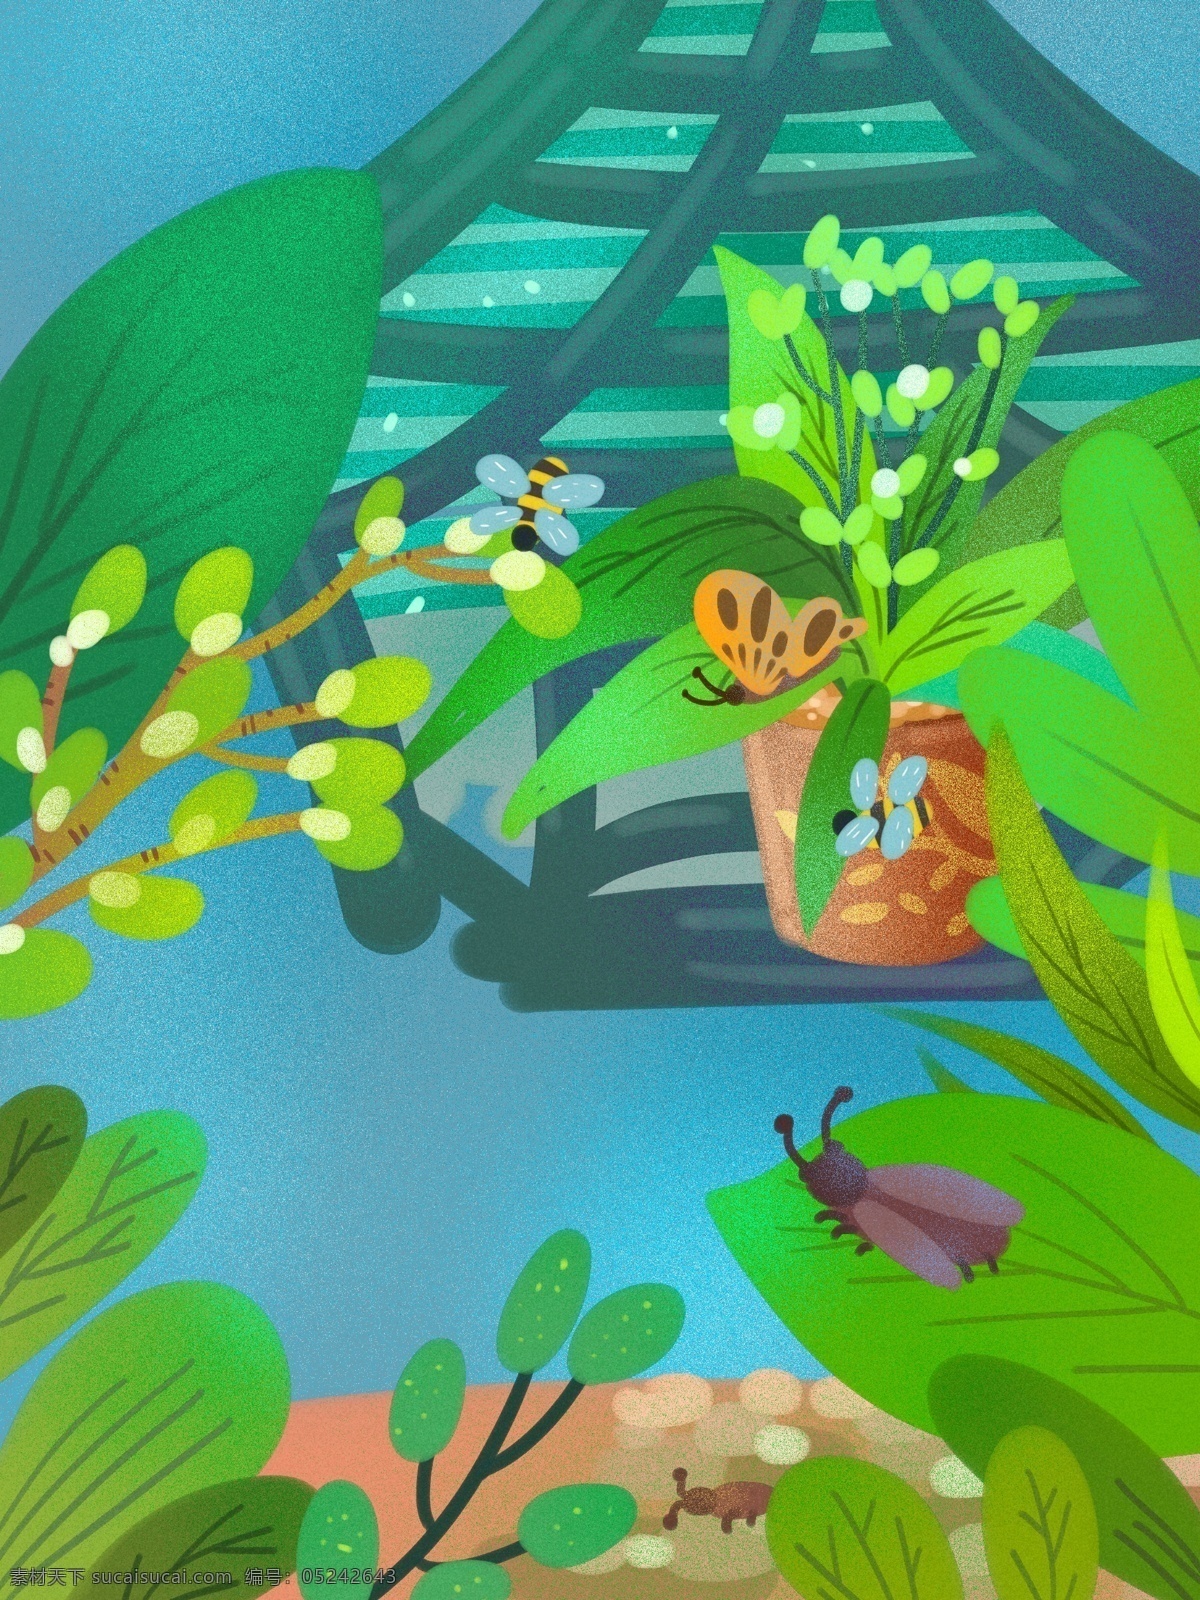 卡通 绿色 居家 小院 背景 手绘背景 绿色背景 居家小院 盆栽背景 植物背景 小虫